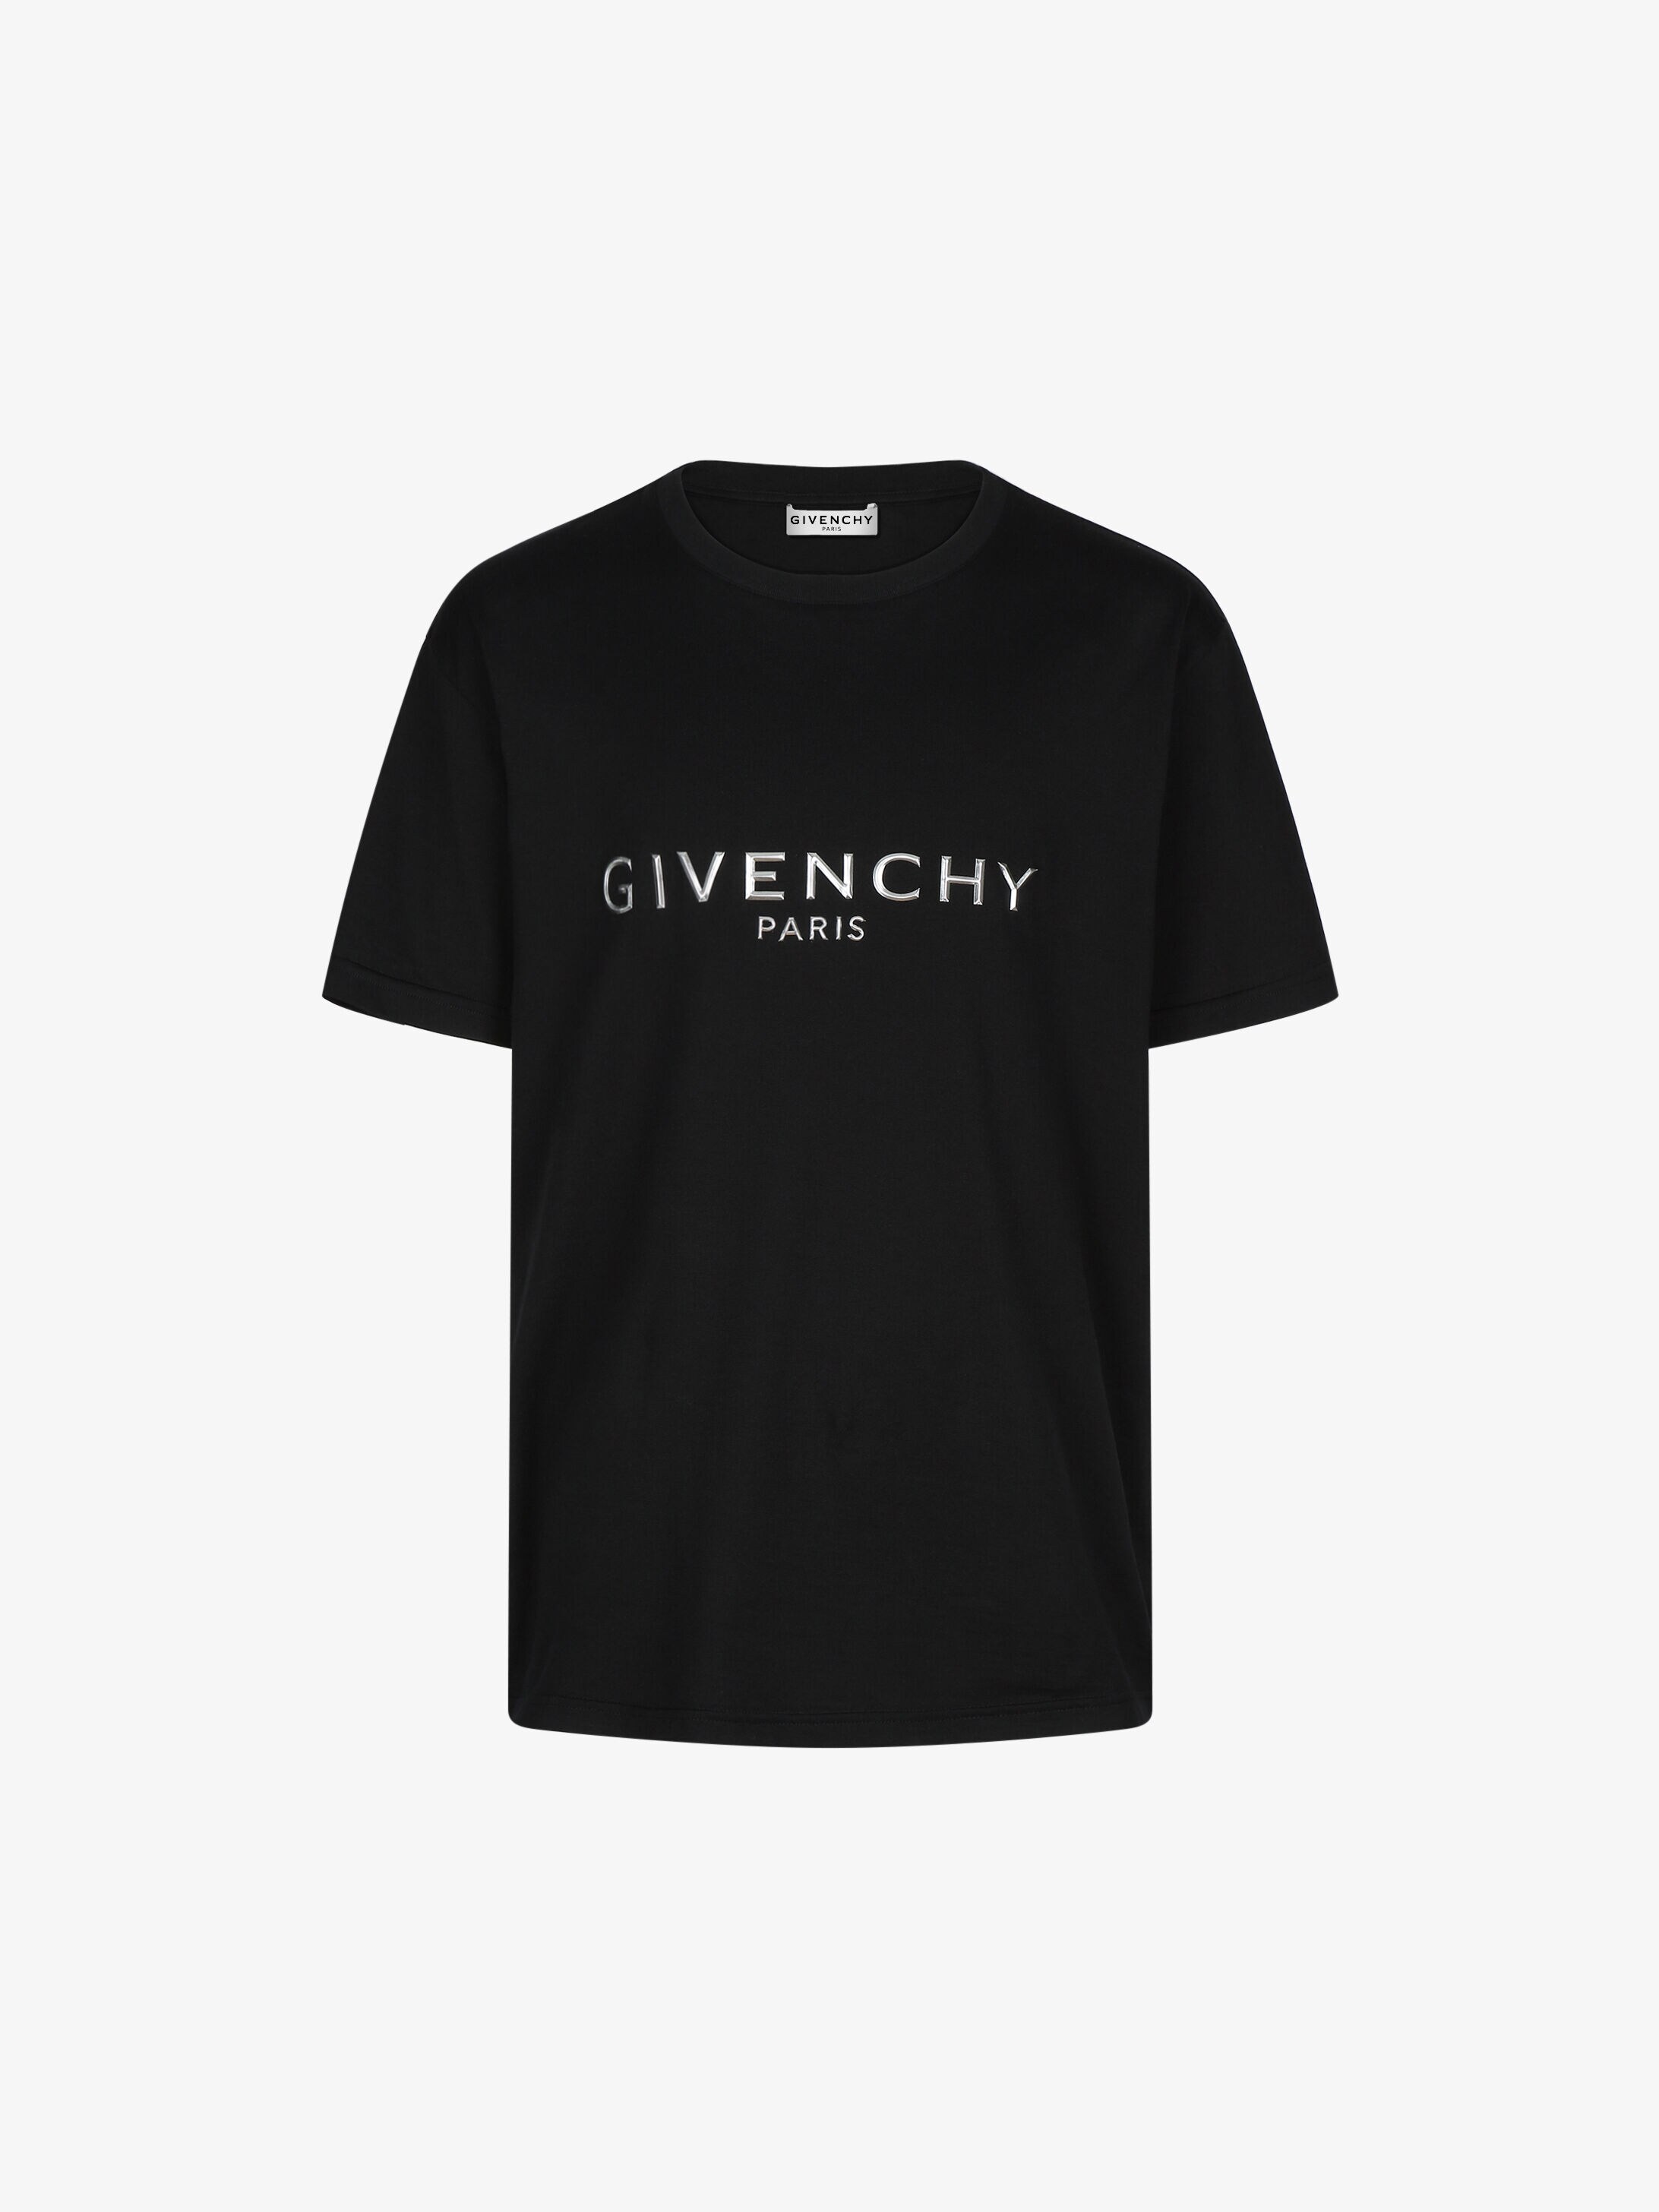 givenchy shirt